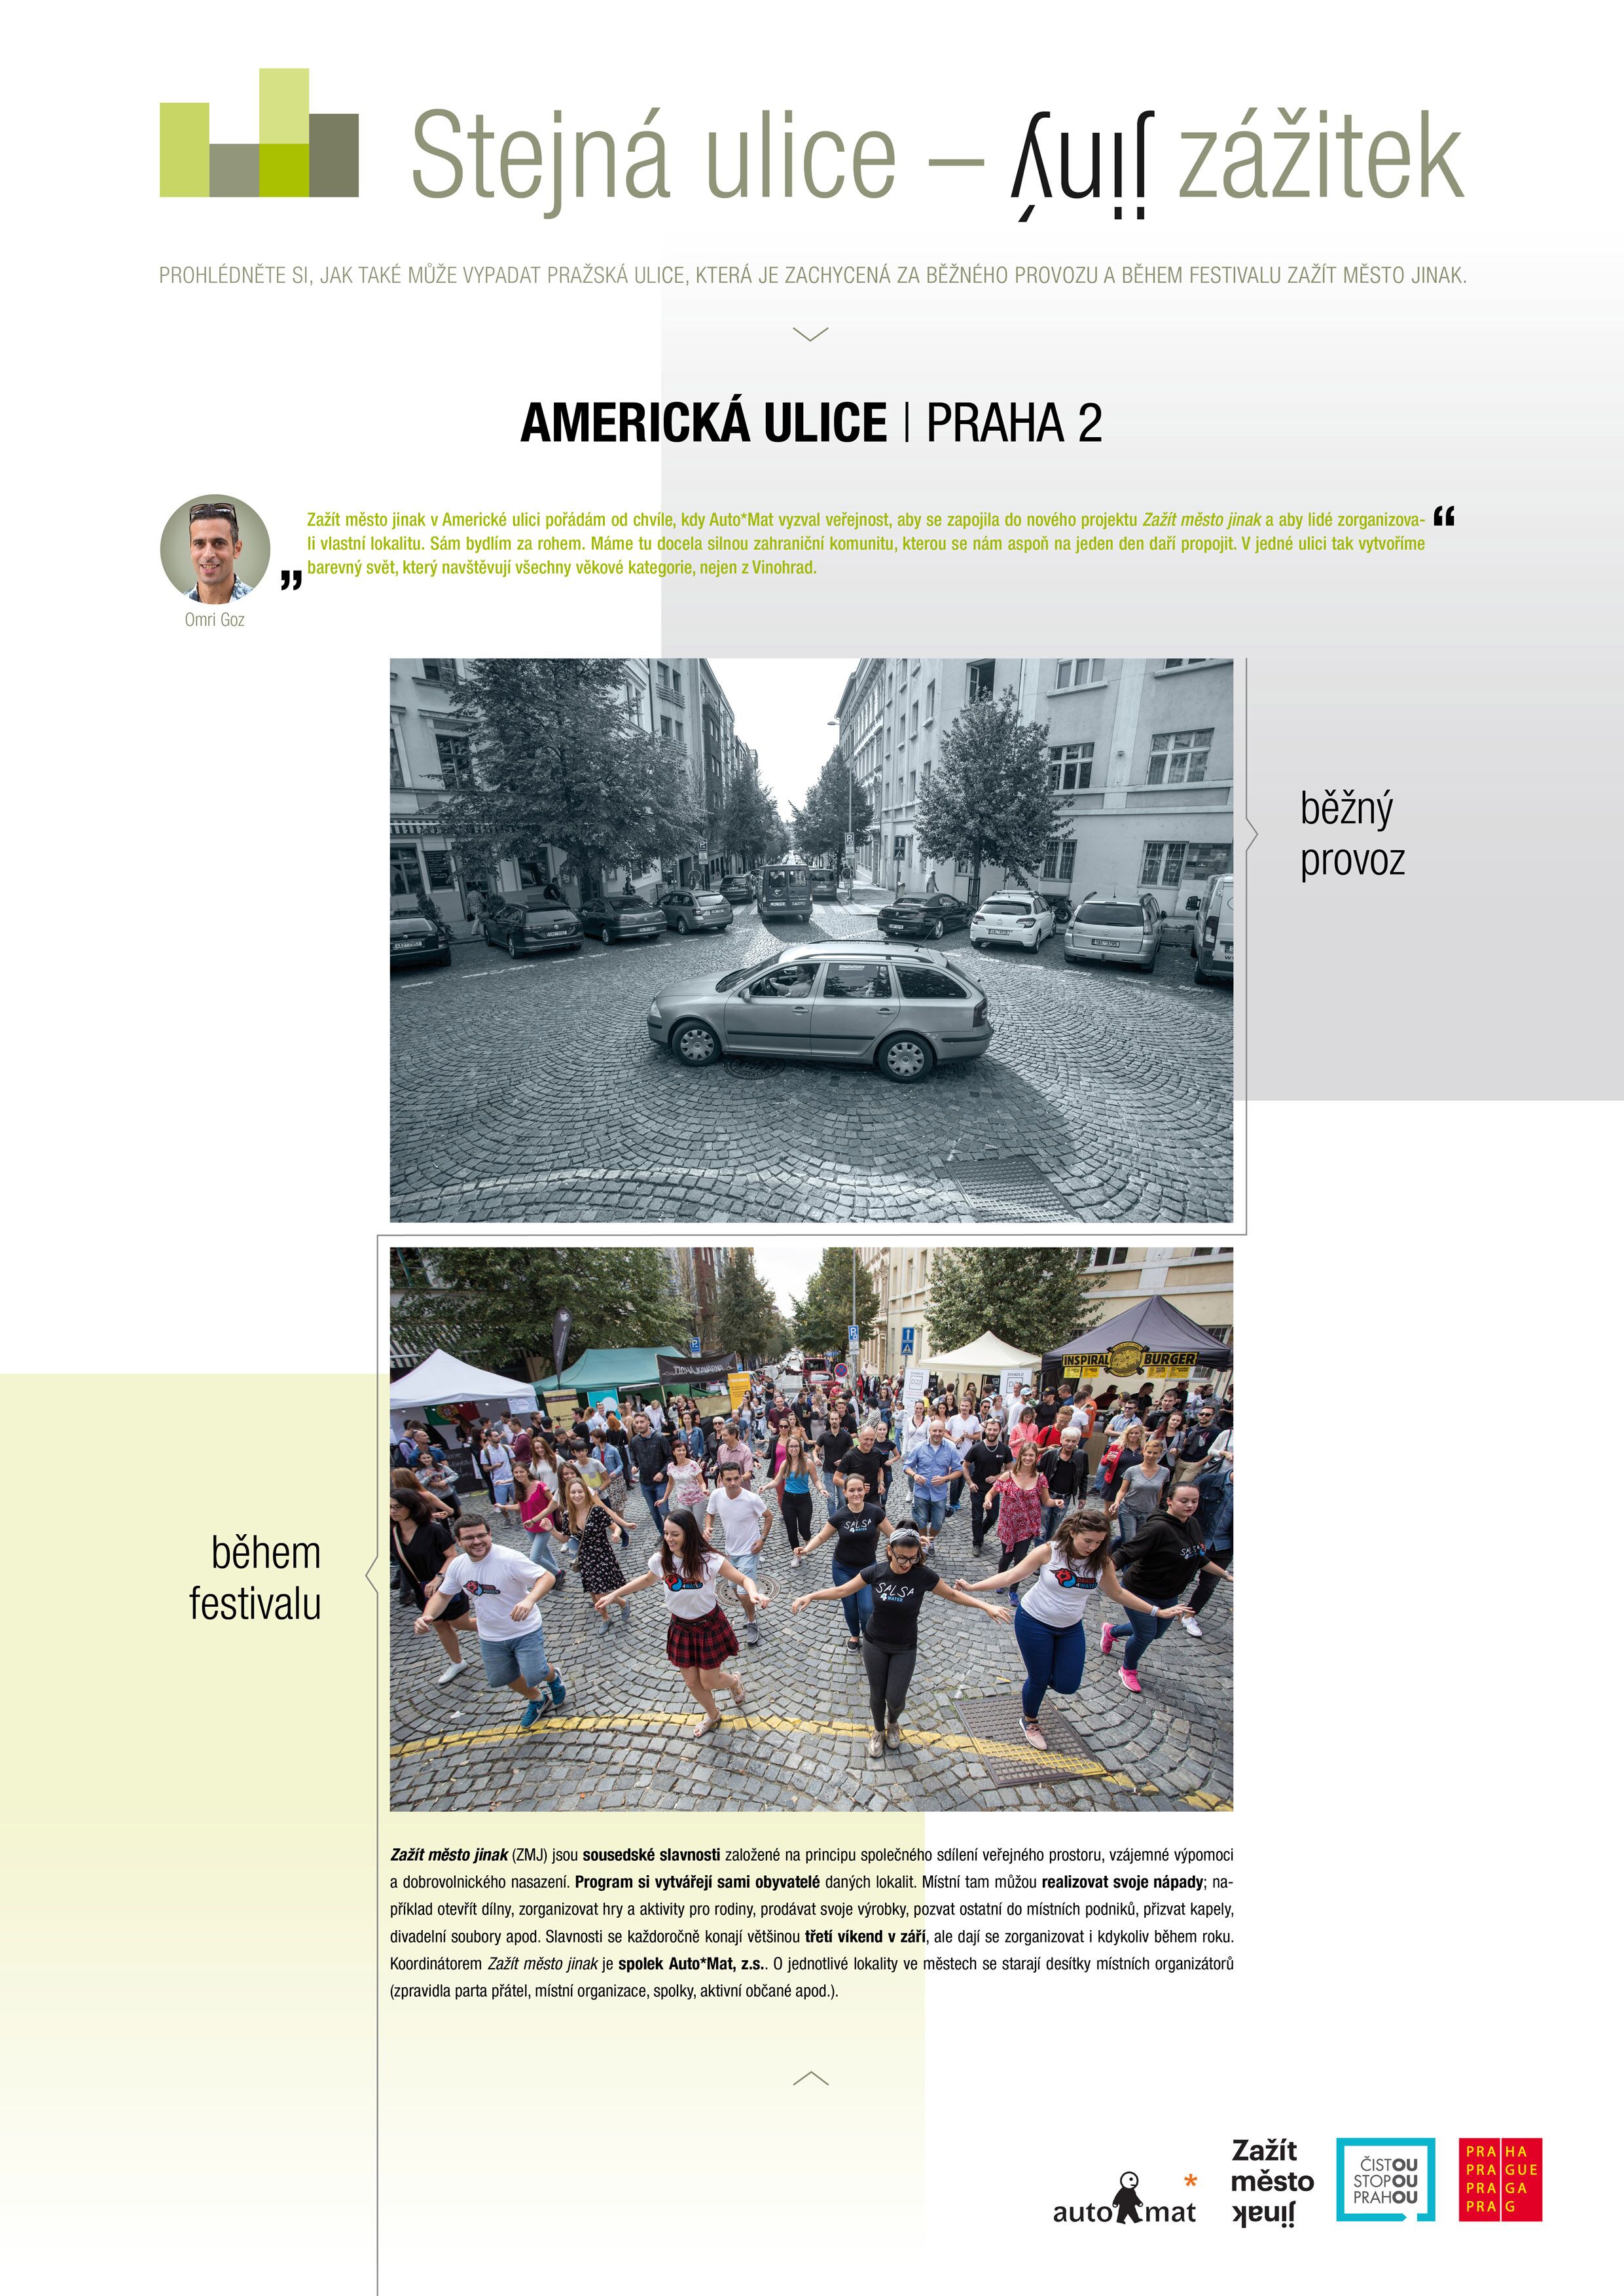 2 fotky Americké ulice v Praze - nahoře s auty, dole bez aut